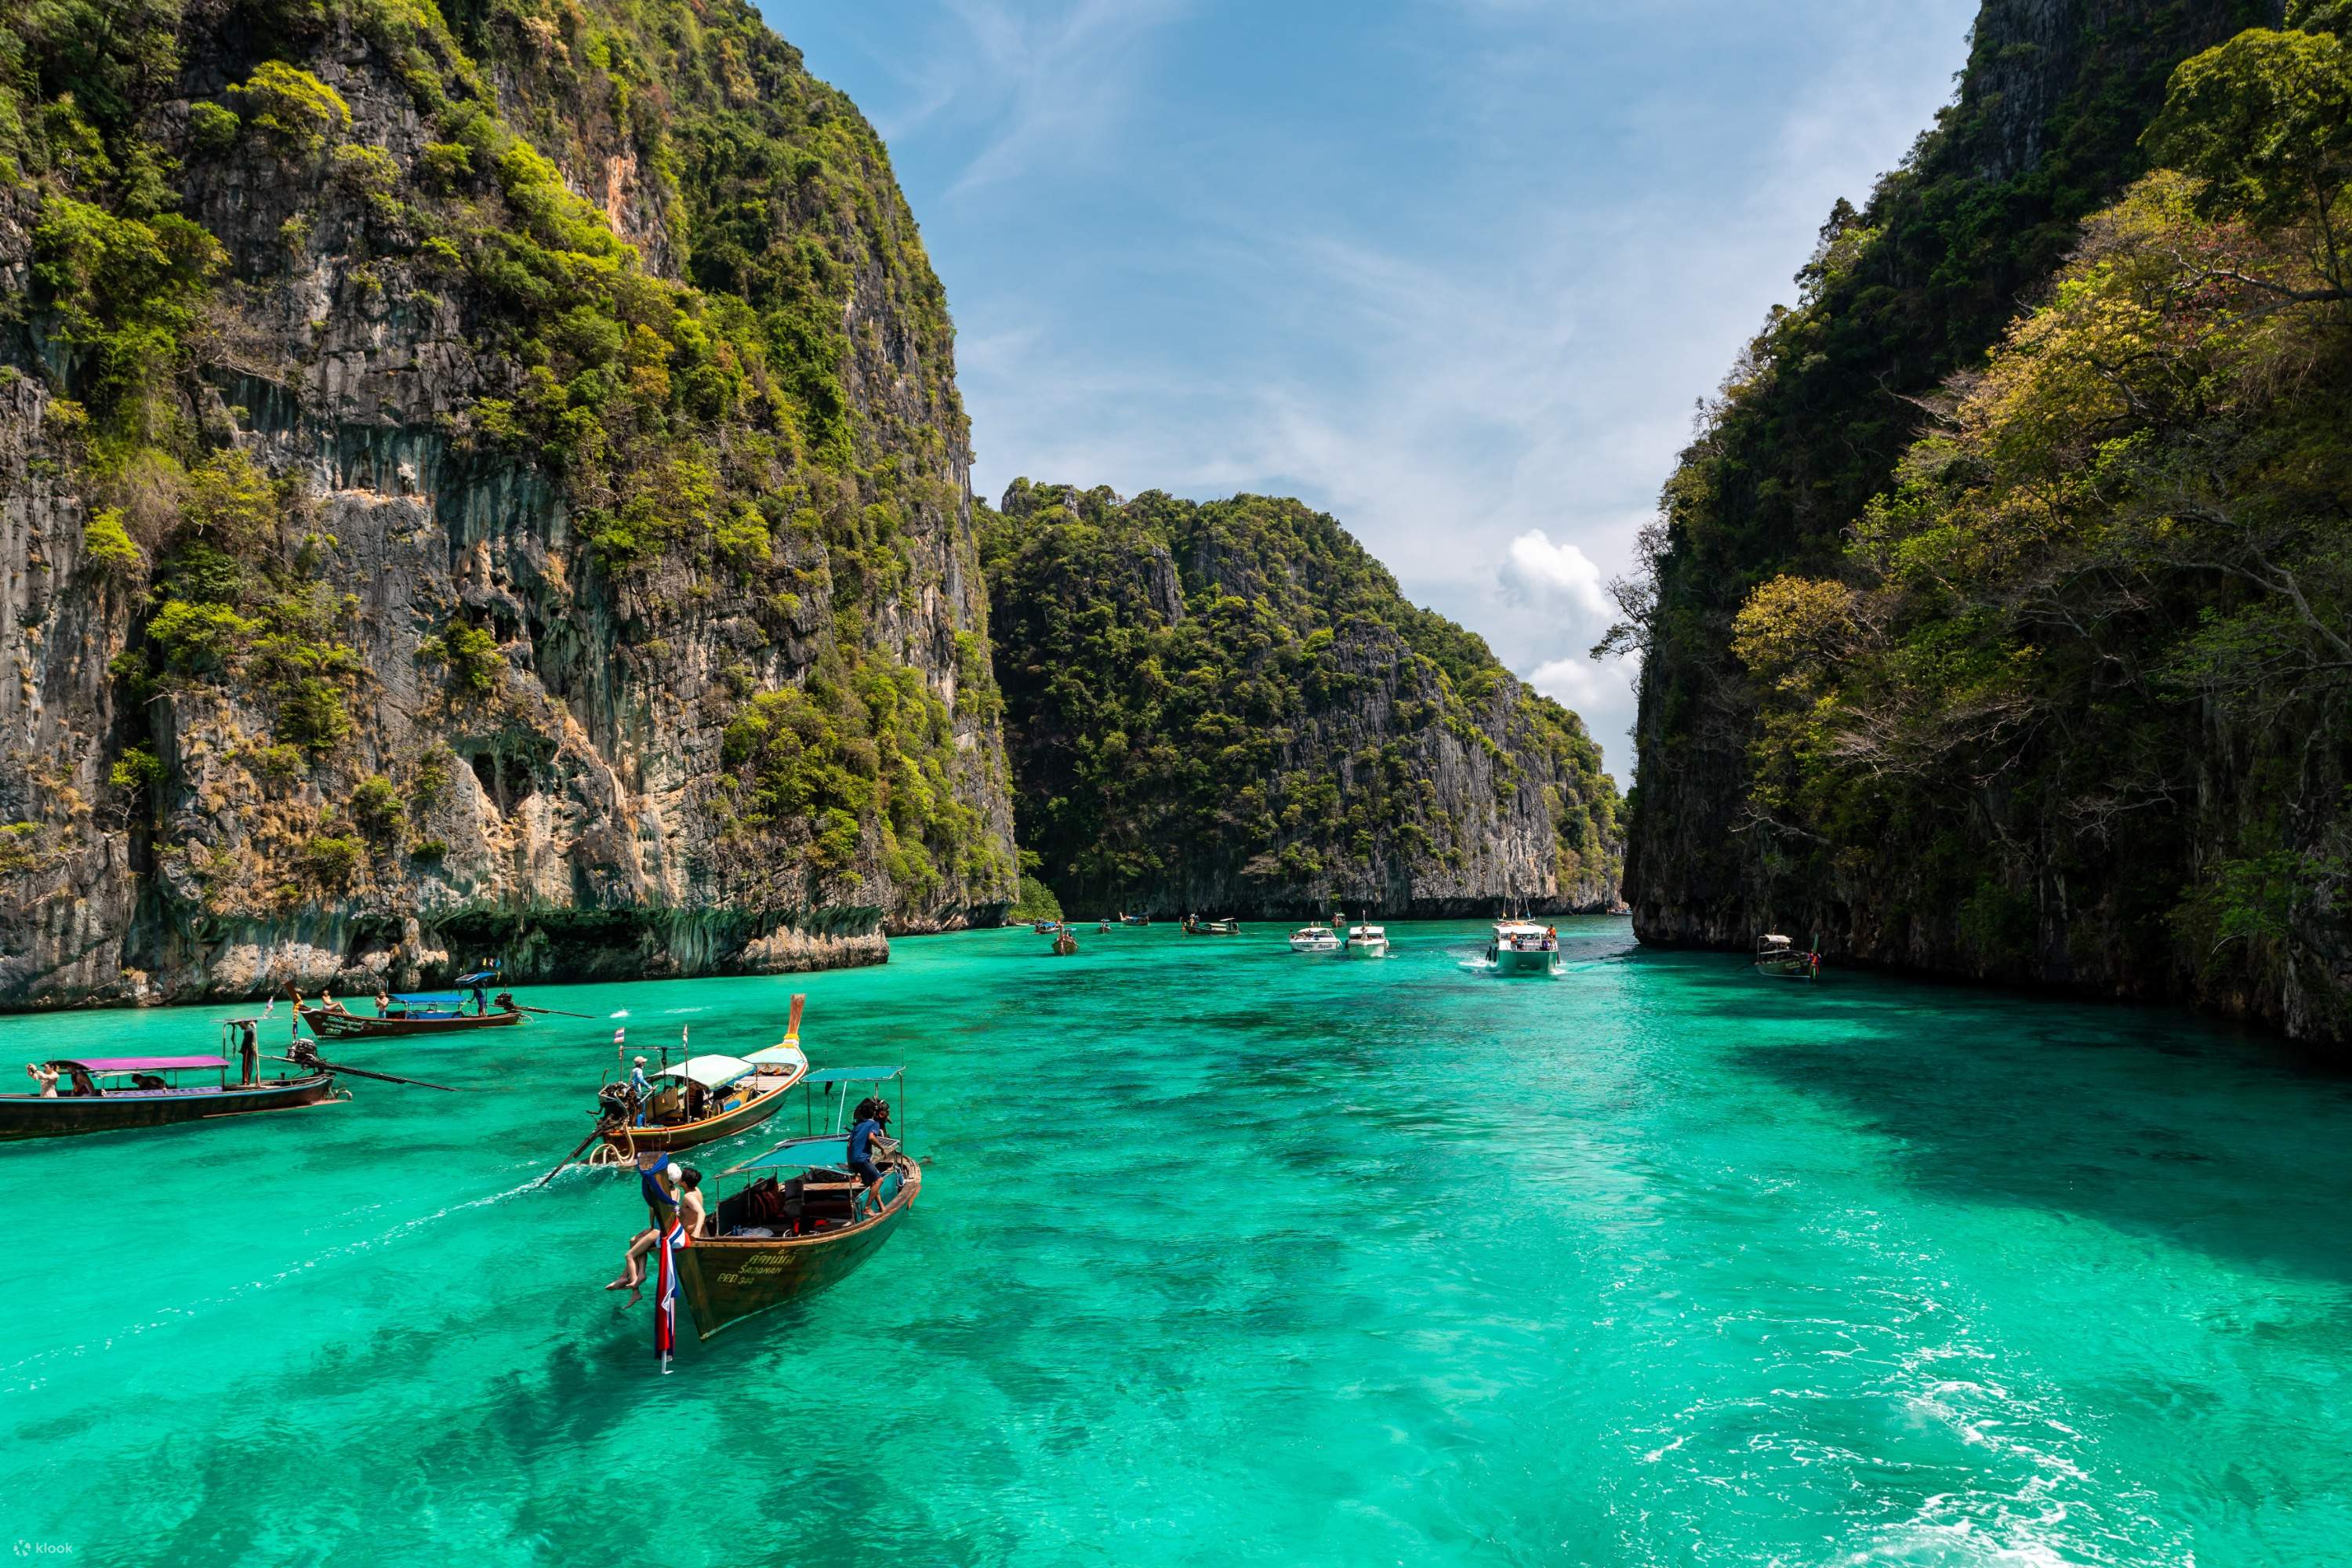 ทัวร์ดำน้ำตื้นที่เกาะพีพี, อ่าวมาหยา, เกาะไข่ และเกาะไผ่เต็มวัน  (เดินทางจากภูเก็ต) - Klook ประเทศไทย